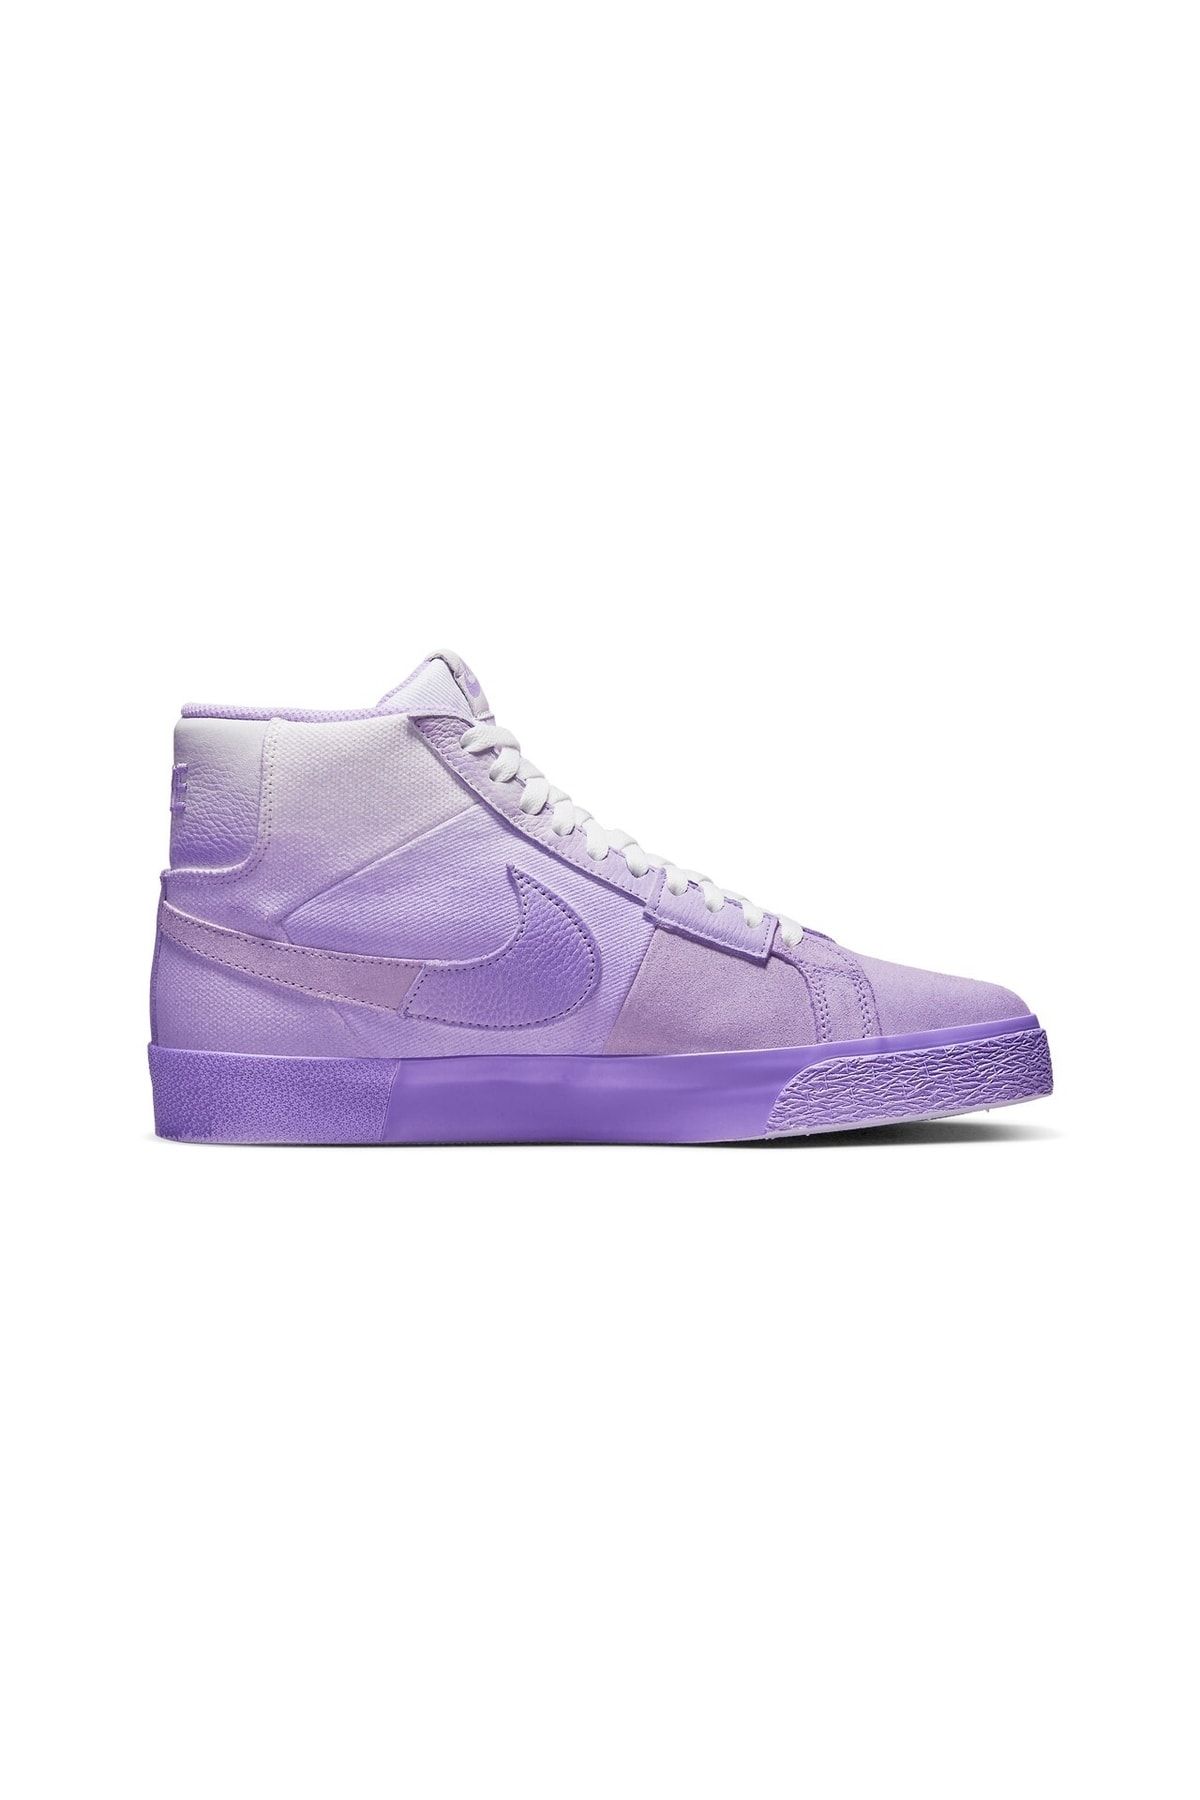 Nike Sb Blazer Mid Prm Lilac - Dr9087-555